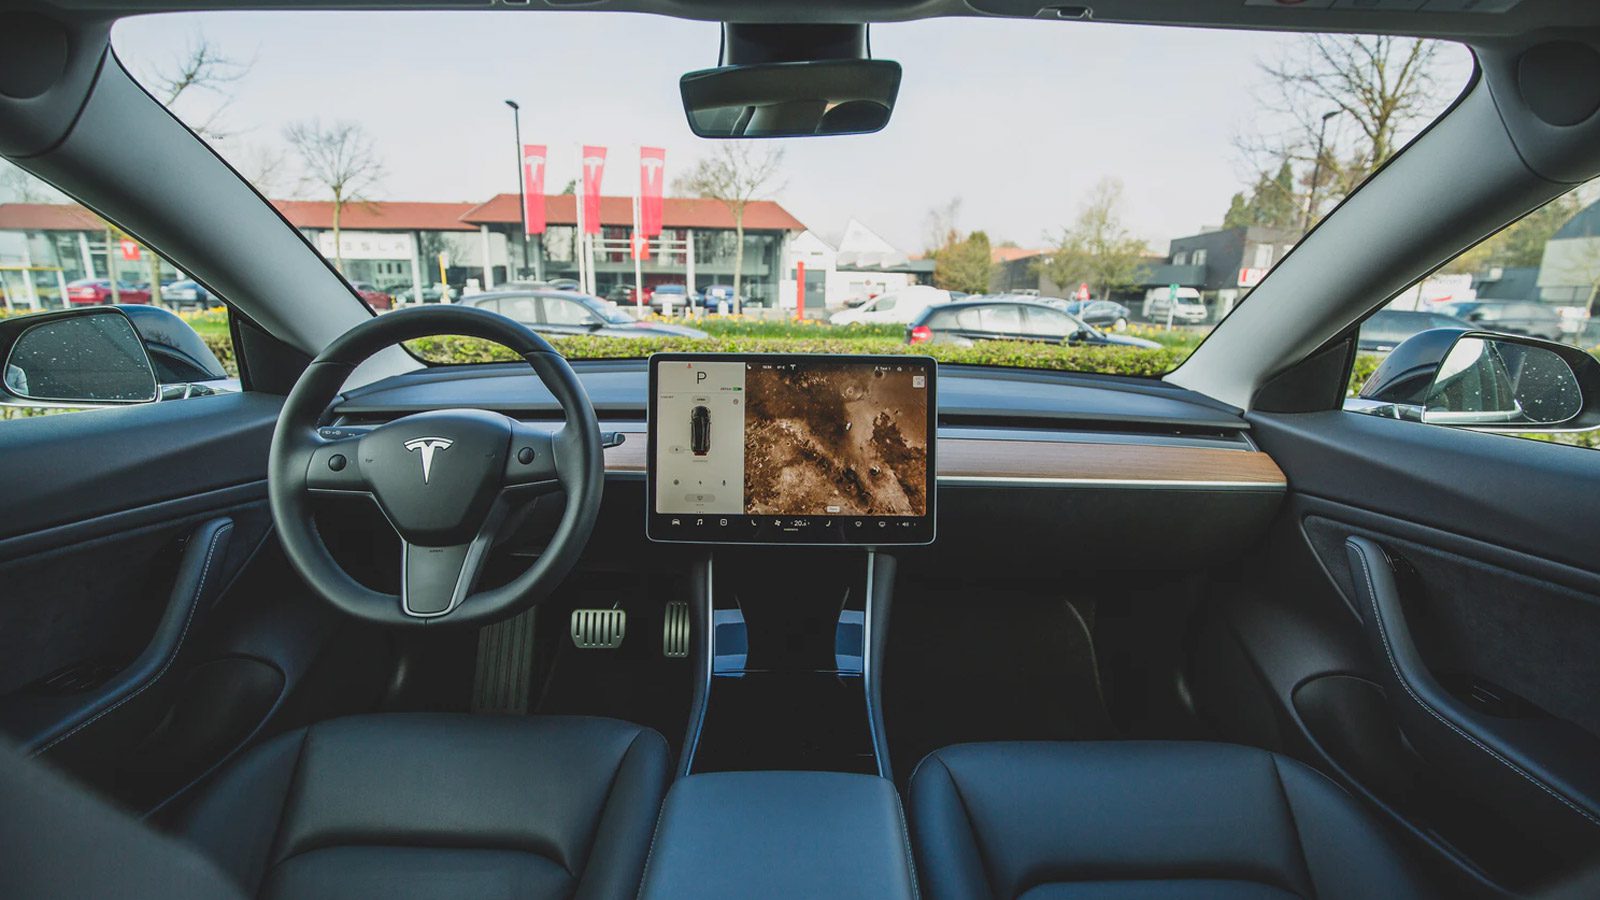 Компания по производству электромобилей Tesla выпускает систему мониторинга водителя с помощью камеры в салоне